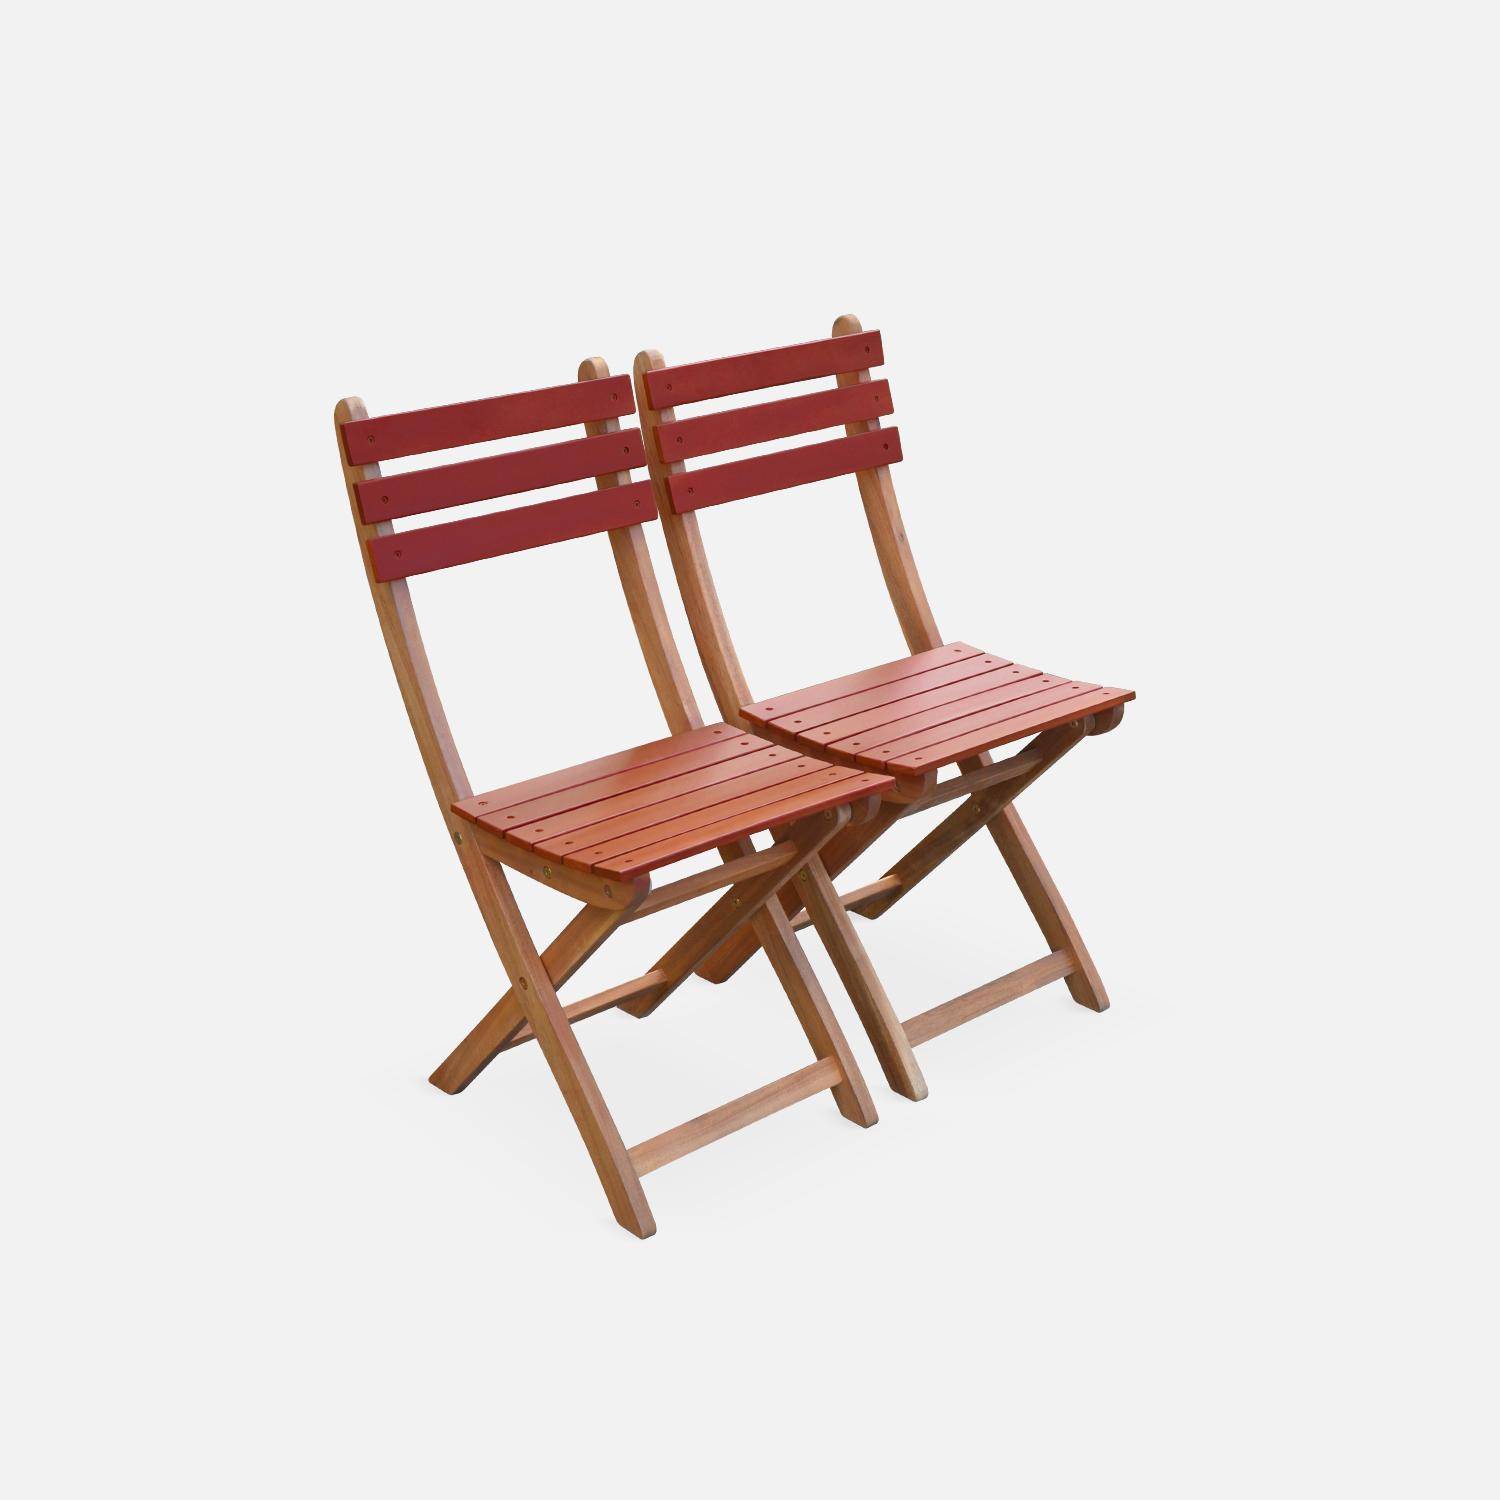 Conjunto de jardín de madera Bistro 60x60cm - Barcelona - terracota, mesa plegable cuadrada bicolor con 2 sillas plegables, acacia Photo2